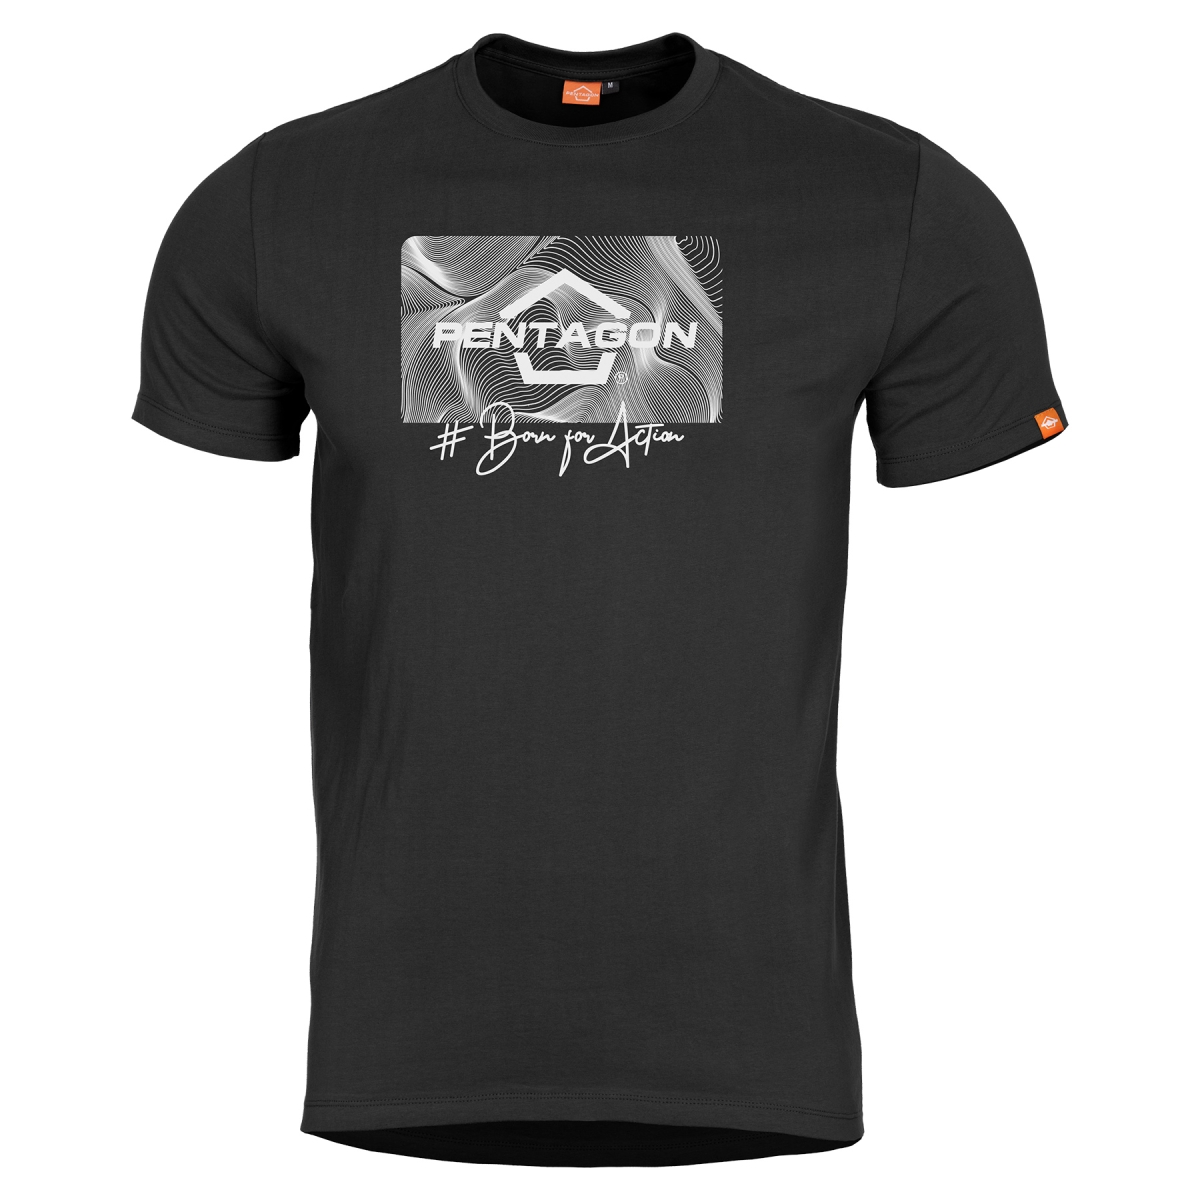 Ageron "Contour" T-shirt Black